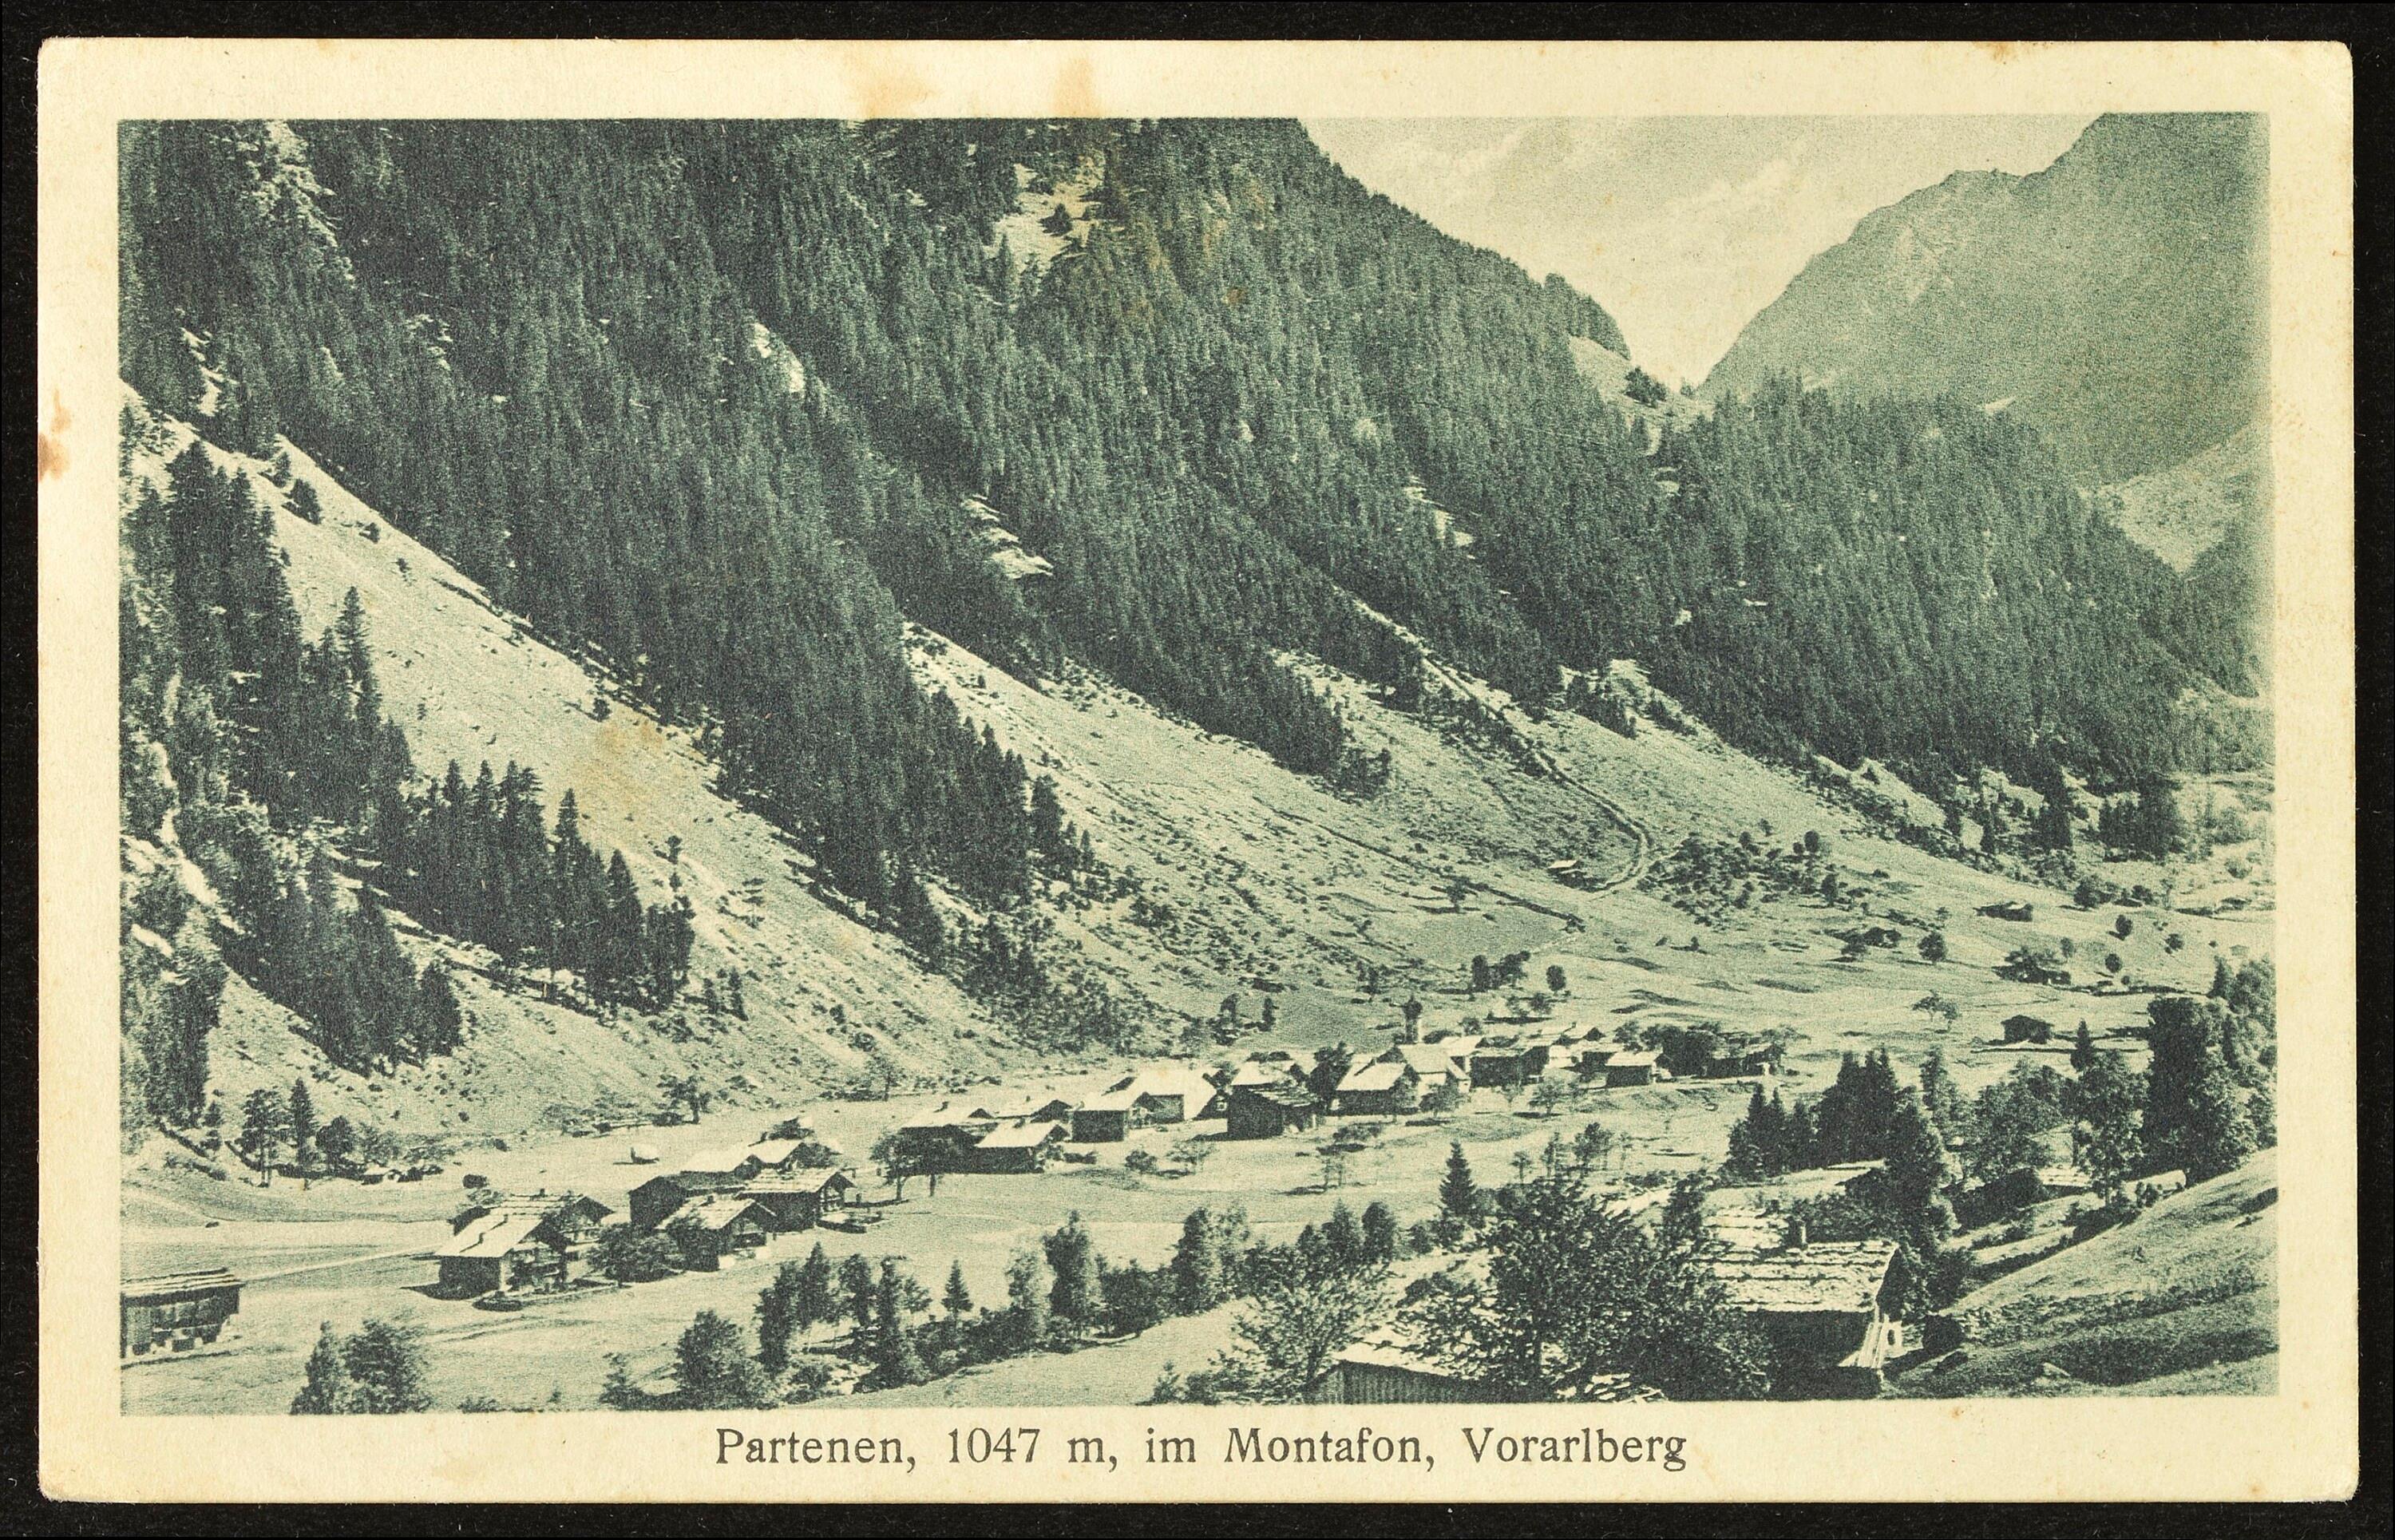 [Gaschurn] Partenen, 1047 m, im Montafon, Vorarlberg></div>


    <hr>
    <div class=